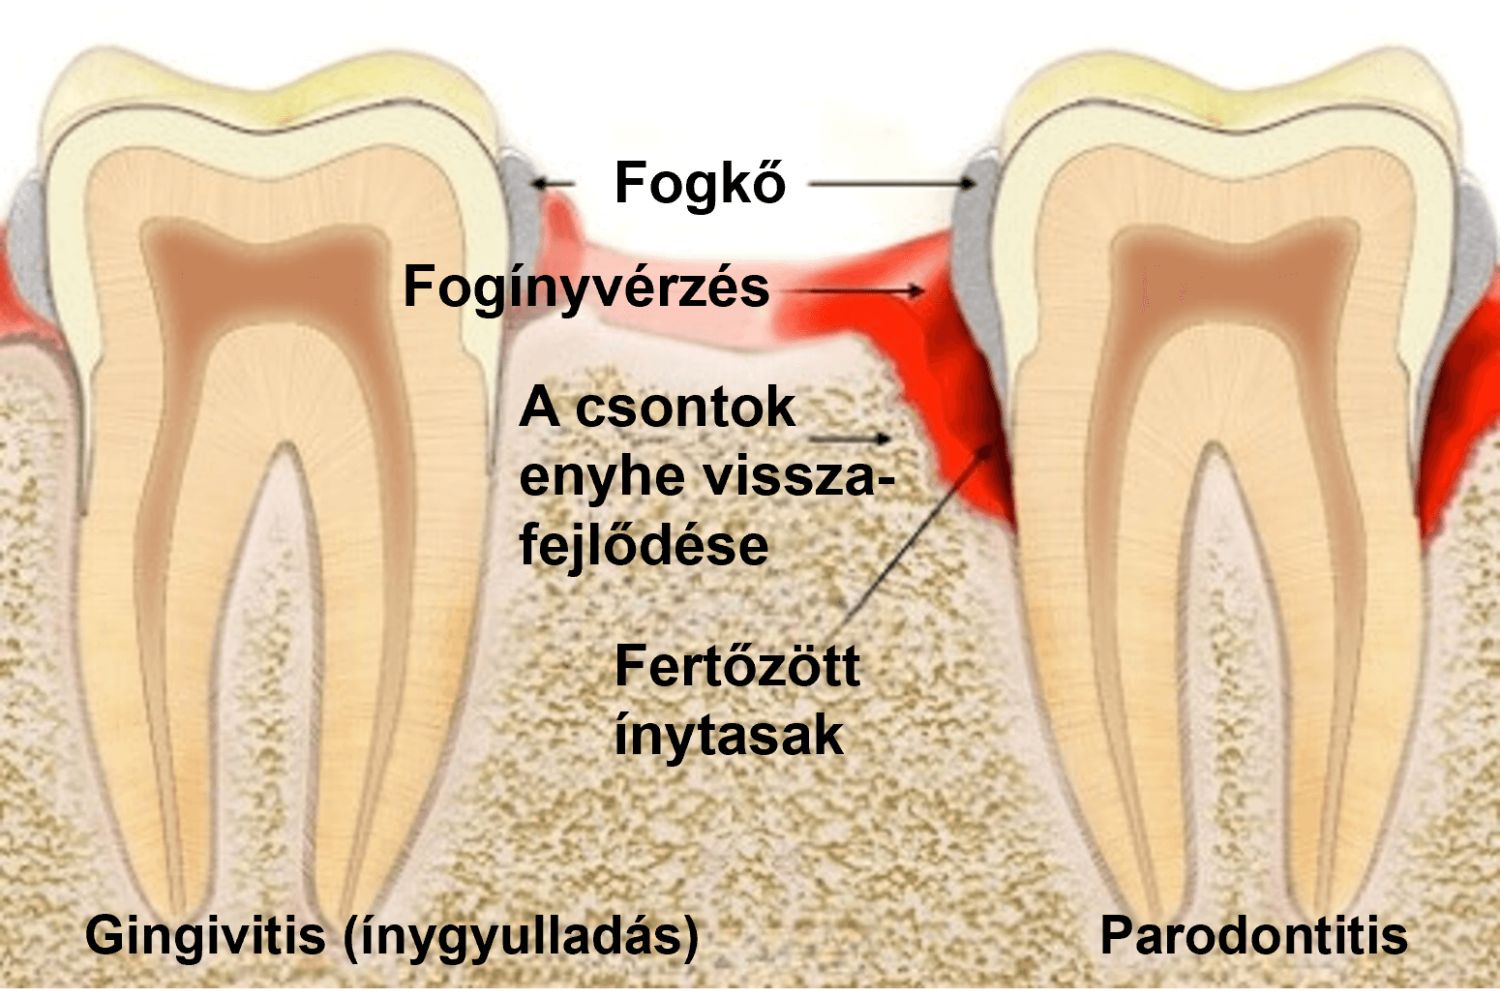 gingivitis (ínygyulladás) és parodontitis összehasonlítása. A parodontózis fogínyvérzéssel, a csontok enyhe visszafejlődésével és fertőzött ínytasakkal járhat.